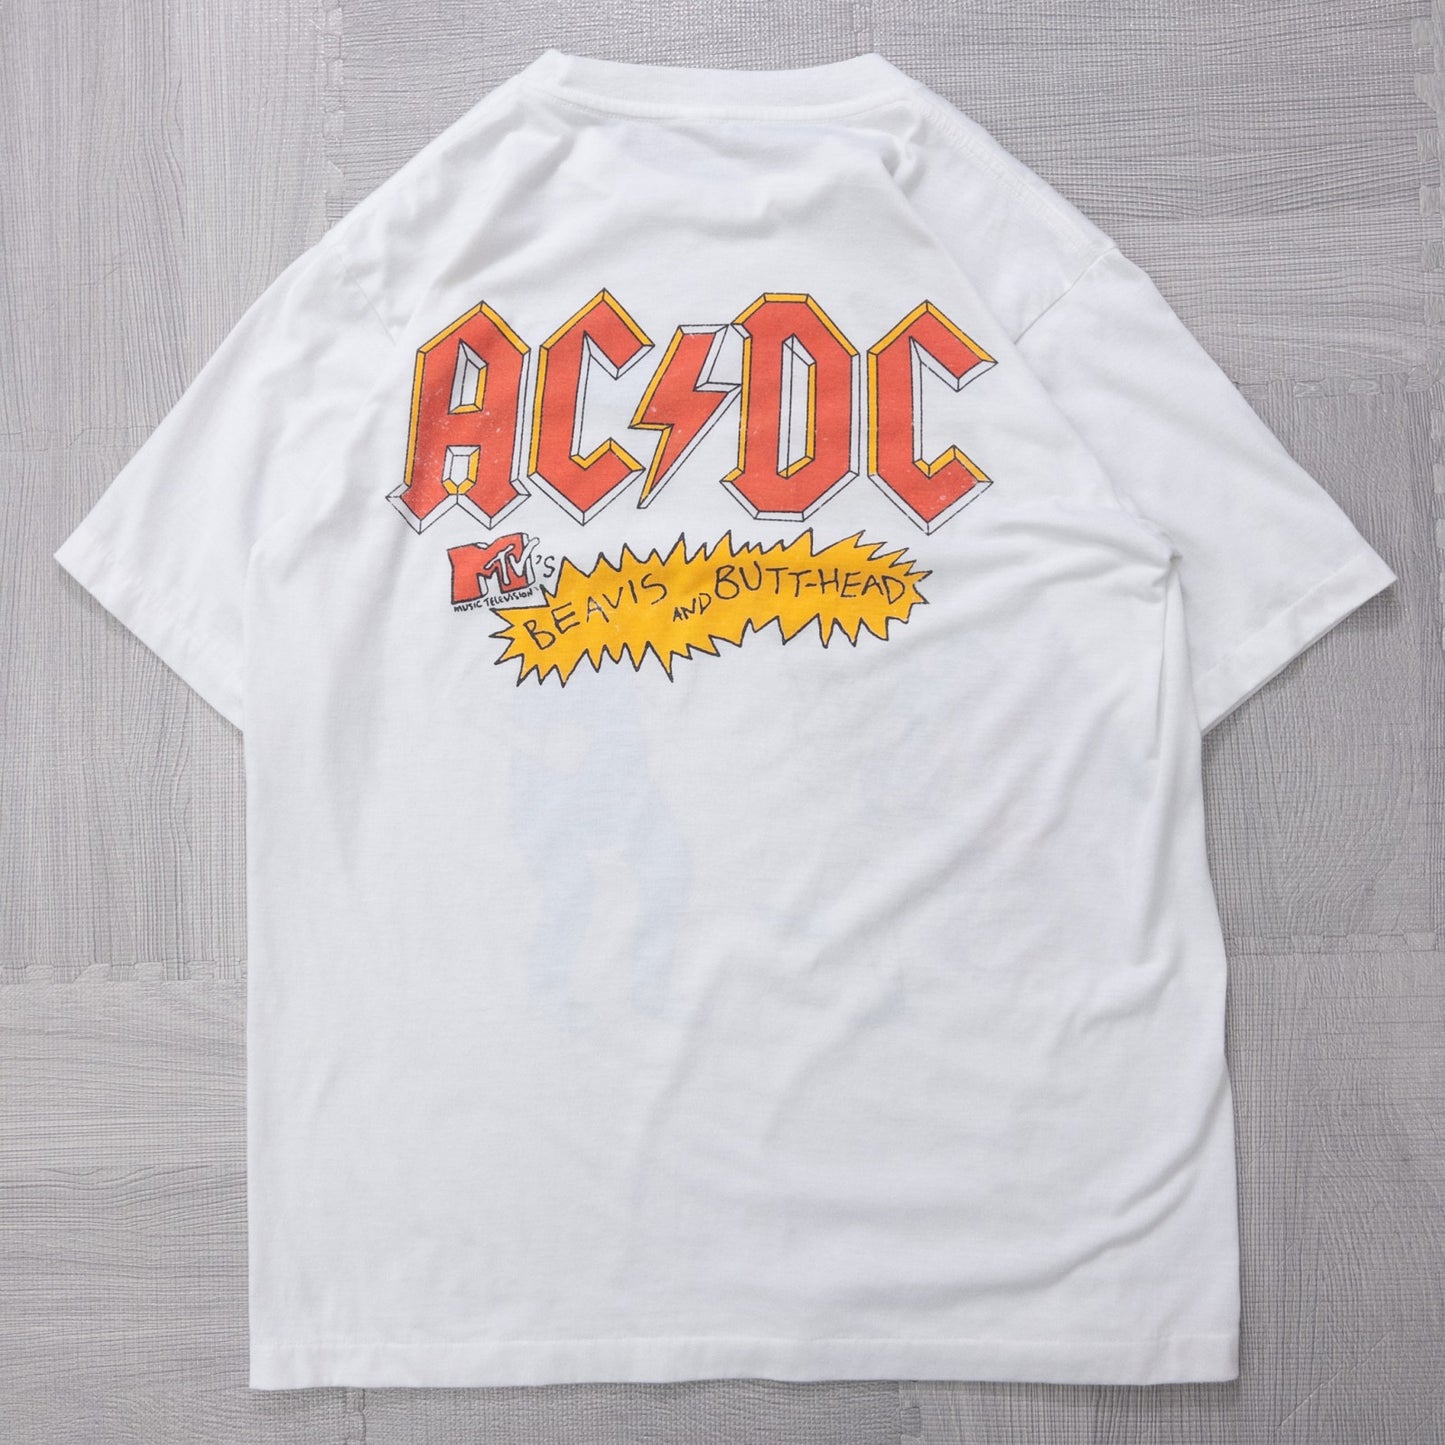 AC/DC ”Beavis and Butt-Head”